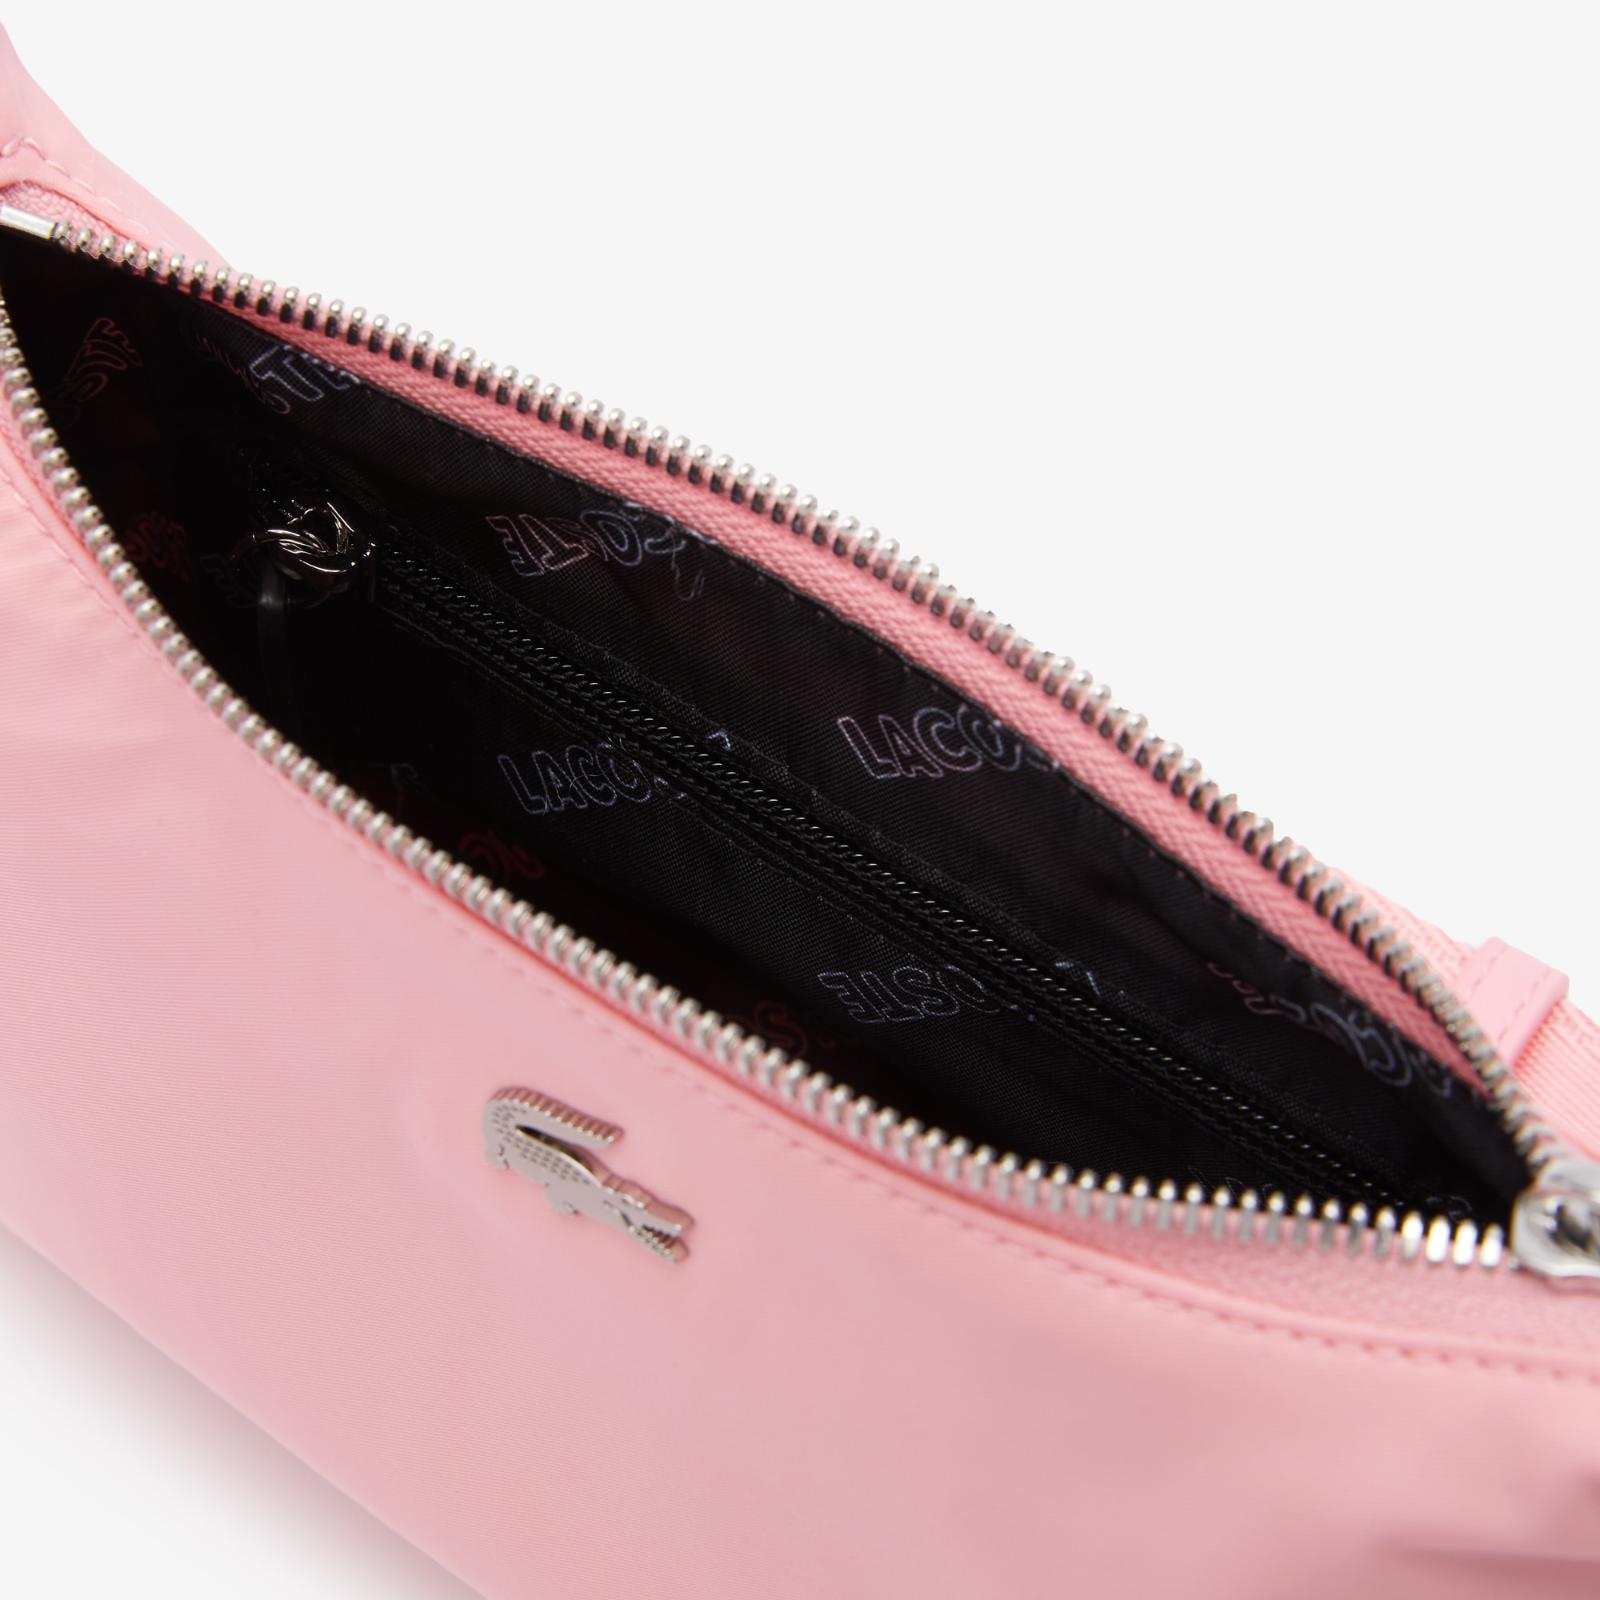 Unisex Metal Crocodile Branded Strap Nylon Shoulder Bag NU3826SG